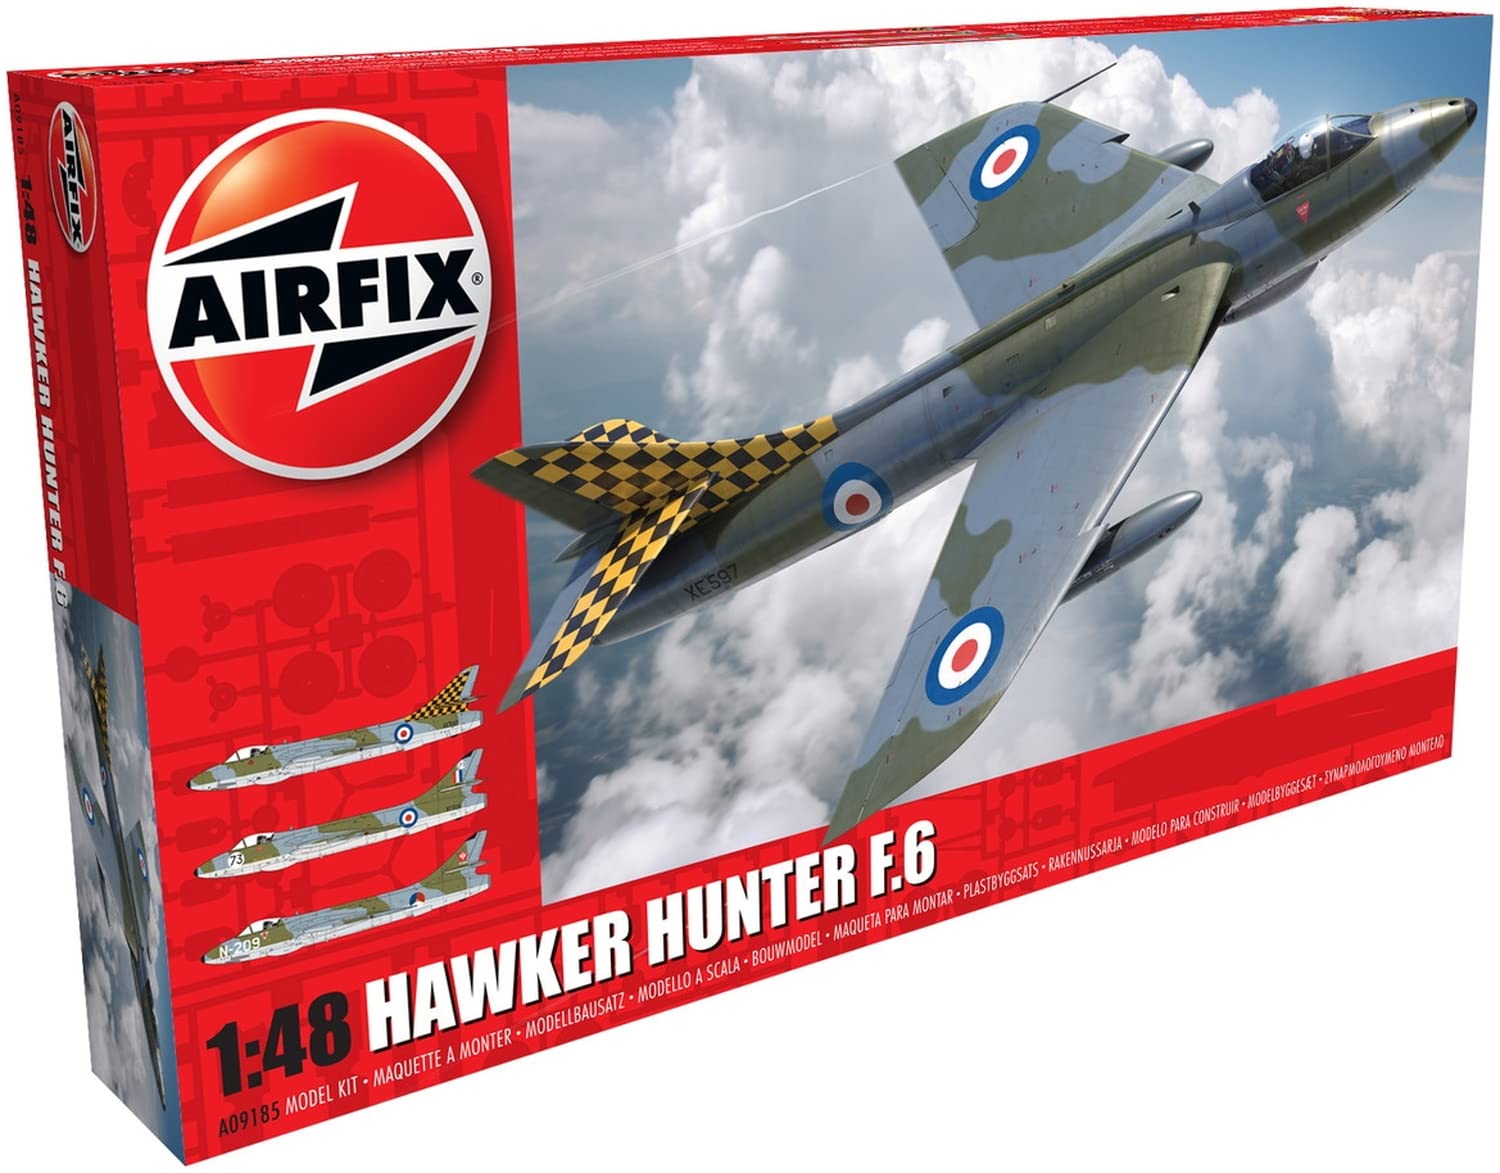 Airfix A09185 1/48 Hawker Hunter F6 Modellbausatz, Modellbauzubehör, Mehrfarbig, 1: 48 Scale